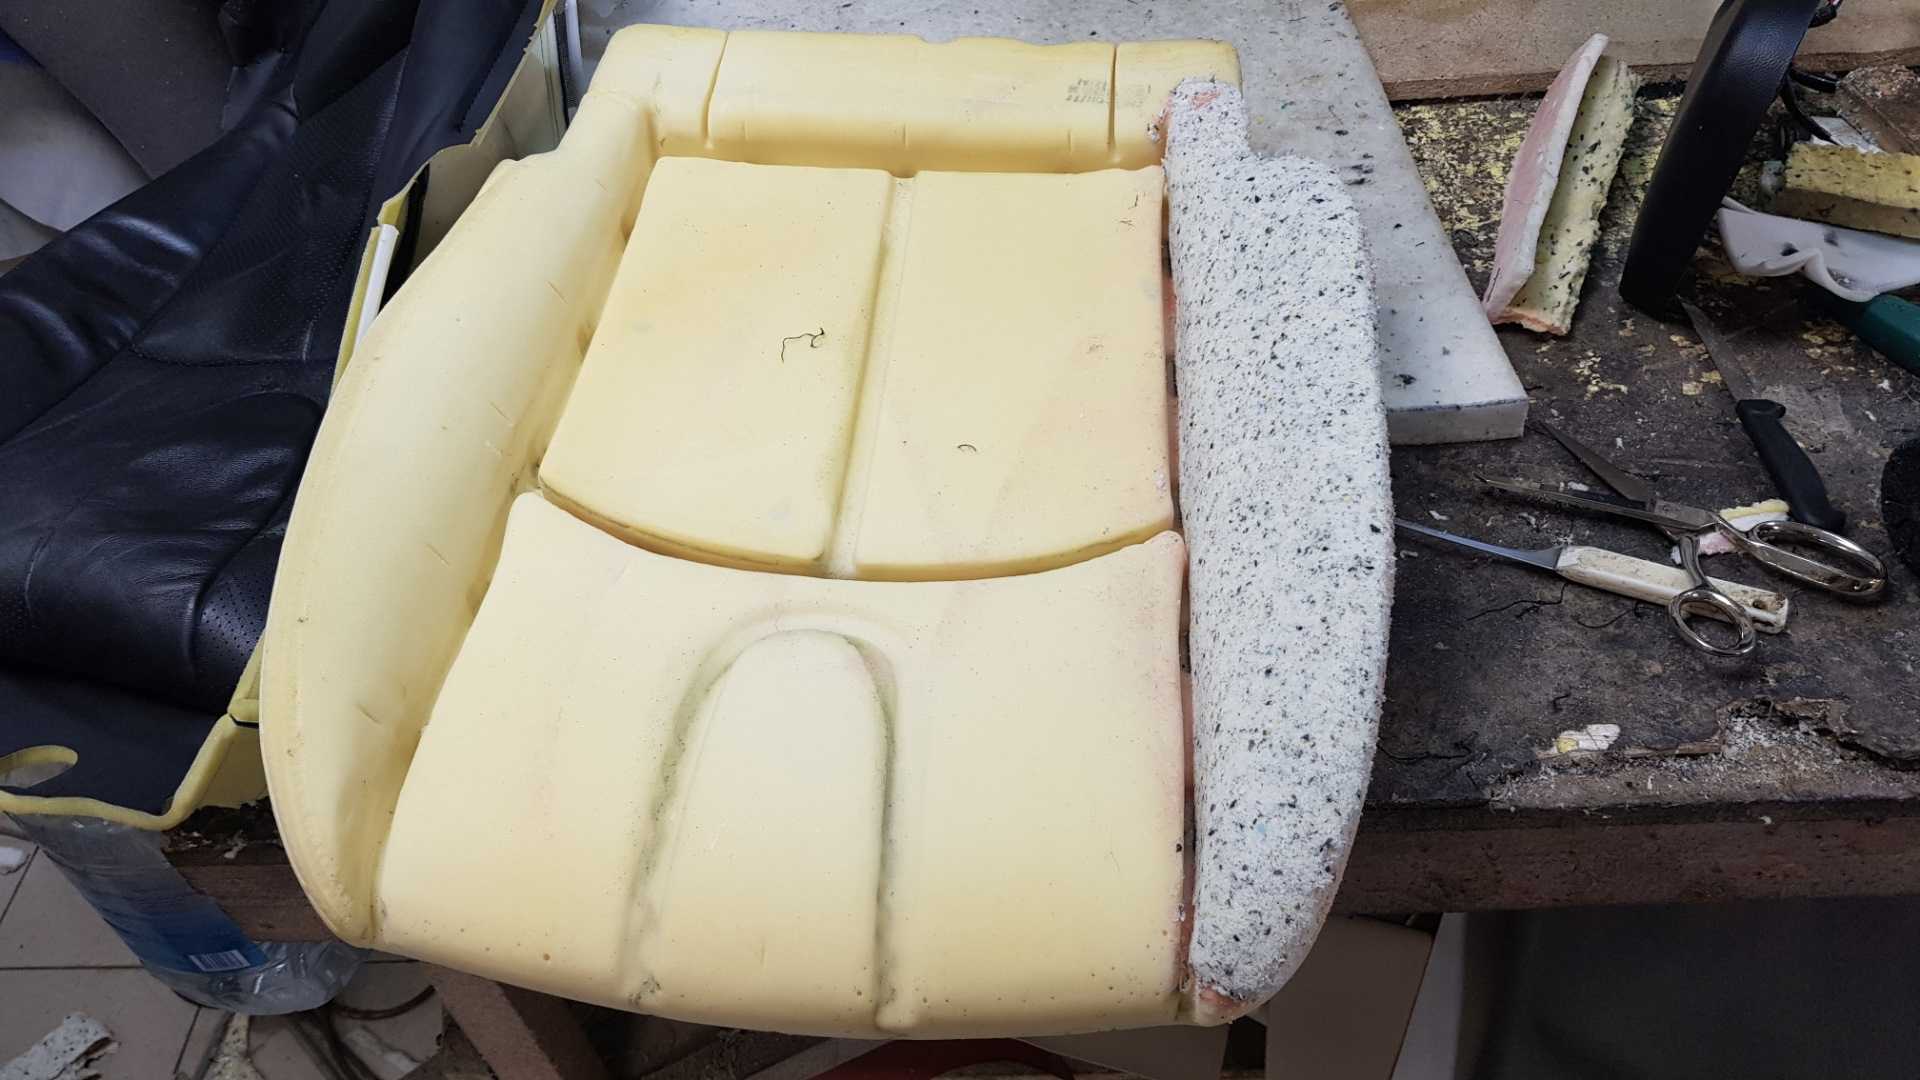 Ремонт обивки сидений автомобиля: виды дефектов, материал, инструменты, пошаговая инструкция, демонтаж сидений